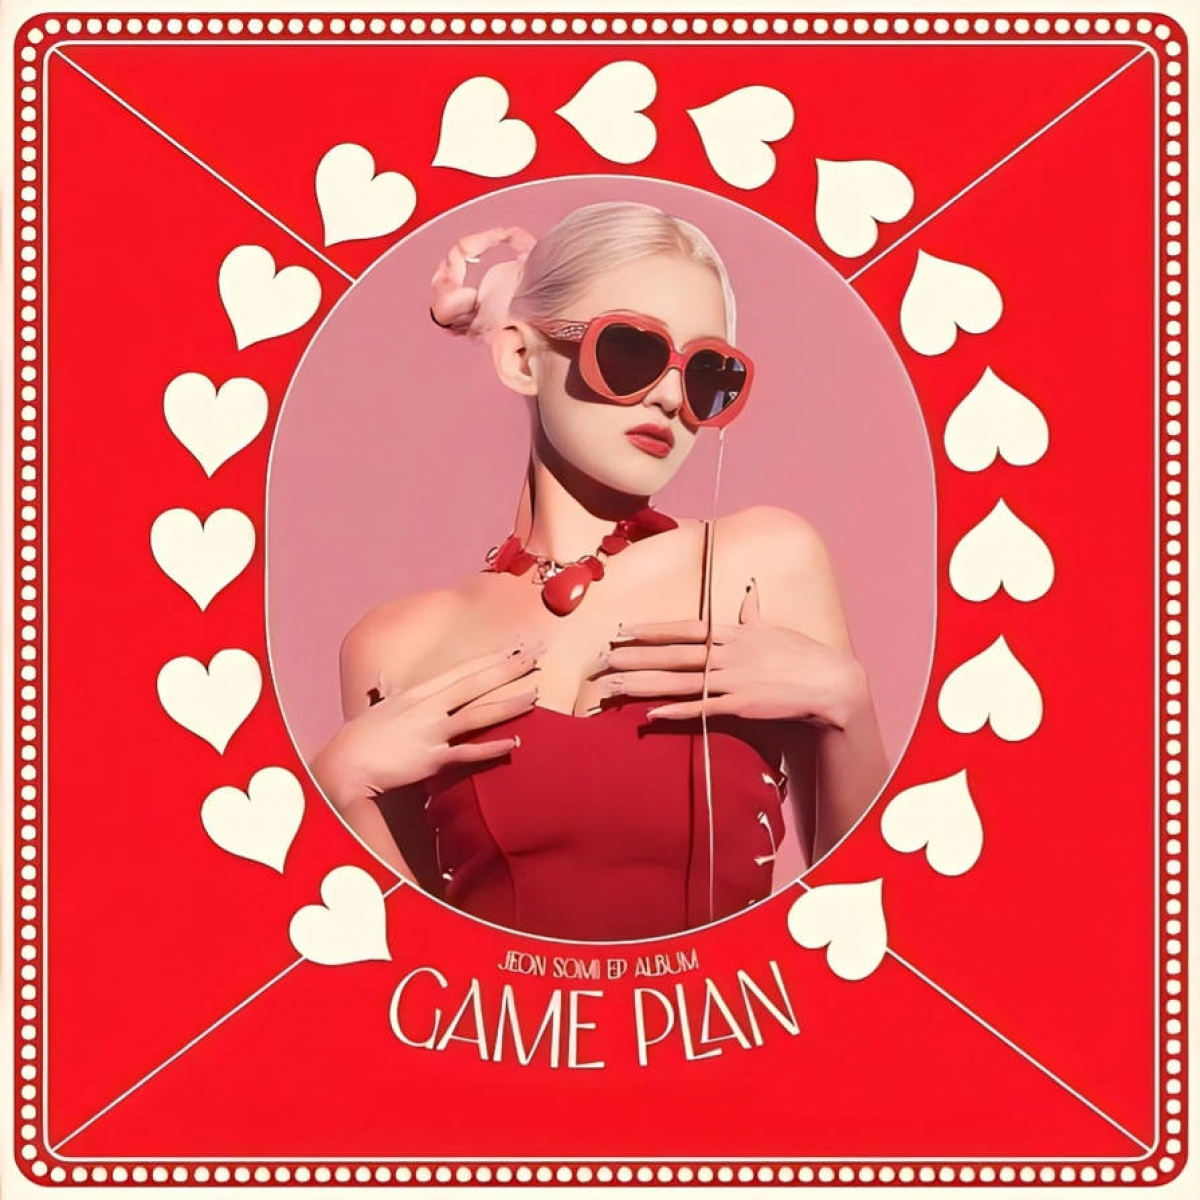 Mini album “GAME PLAN” được kì vọng bứt phá của bông hồng lai Jeon Somi